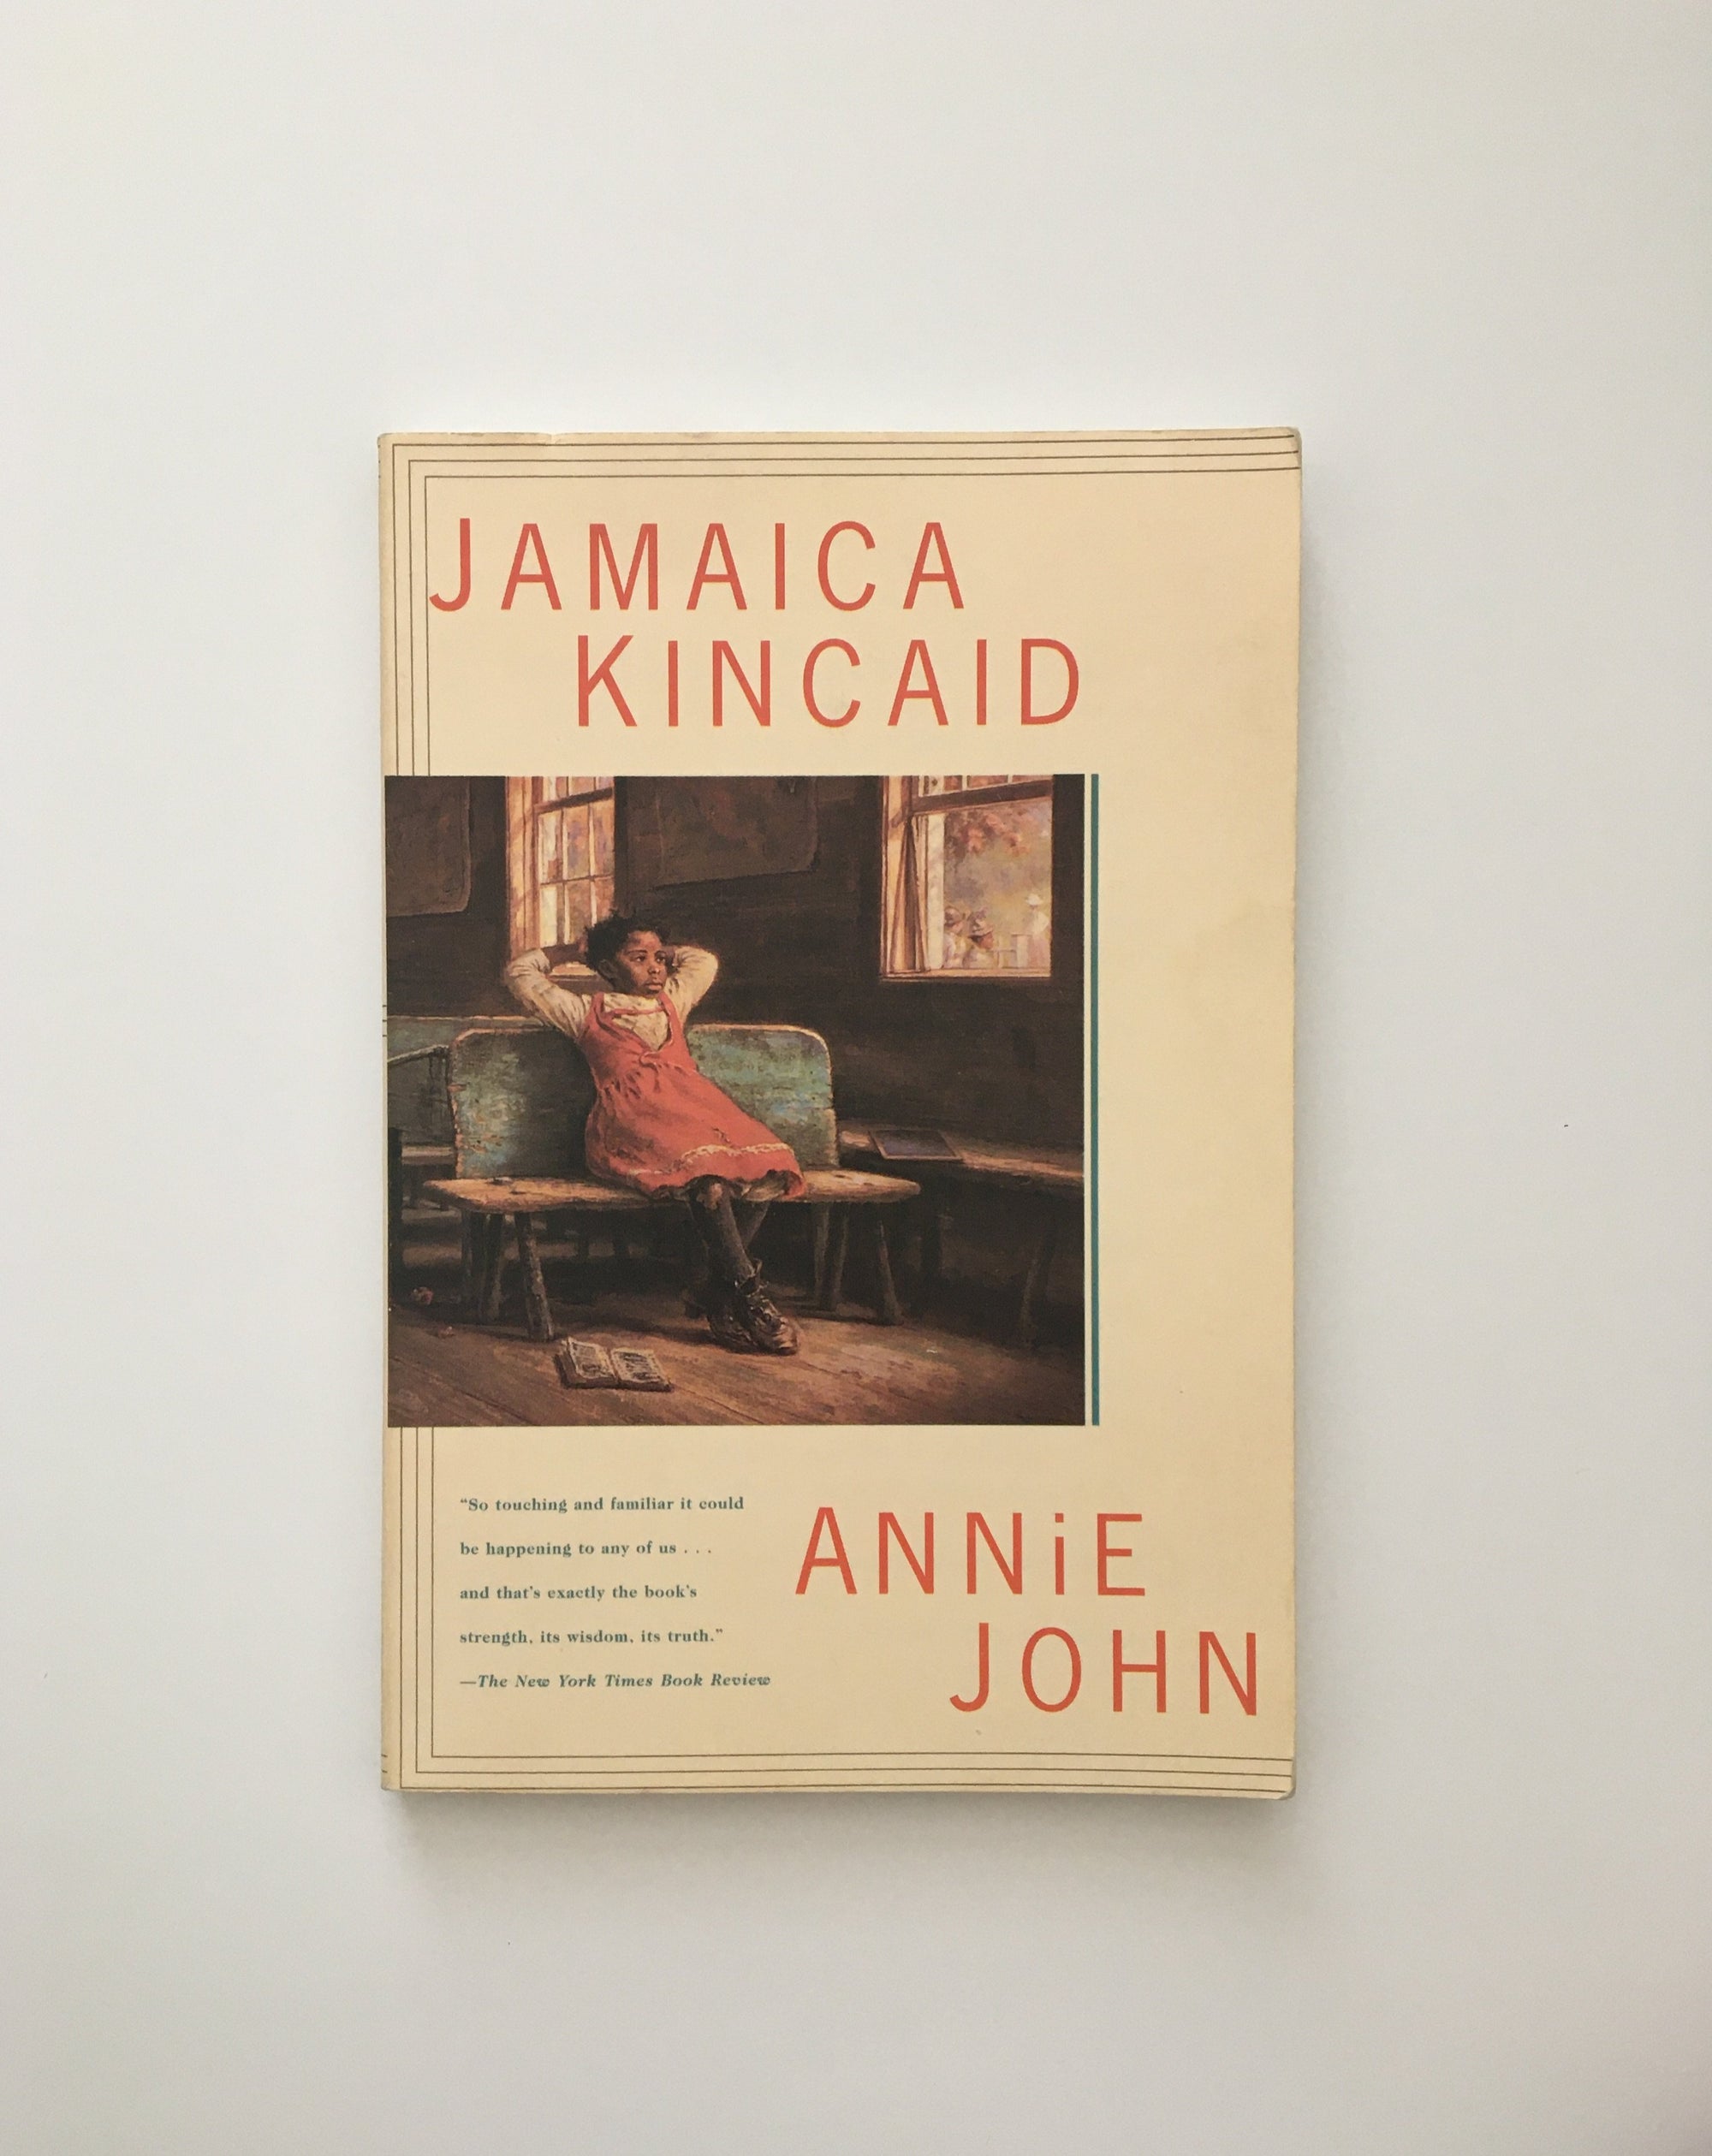 Annie John by Jamaica Kincaid, book, Ten Dollar Books, Ten Dollar Books